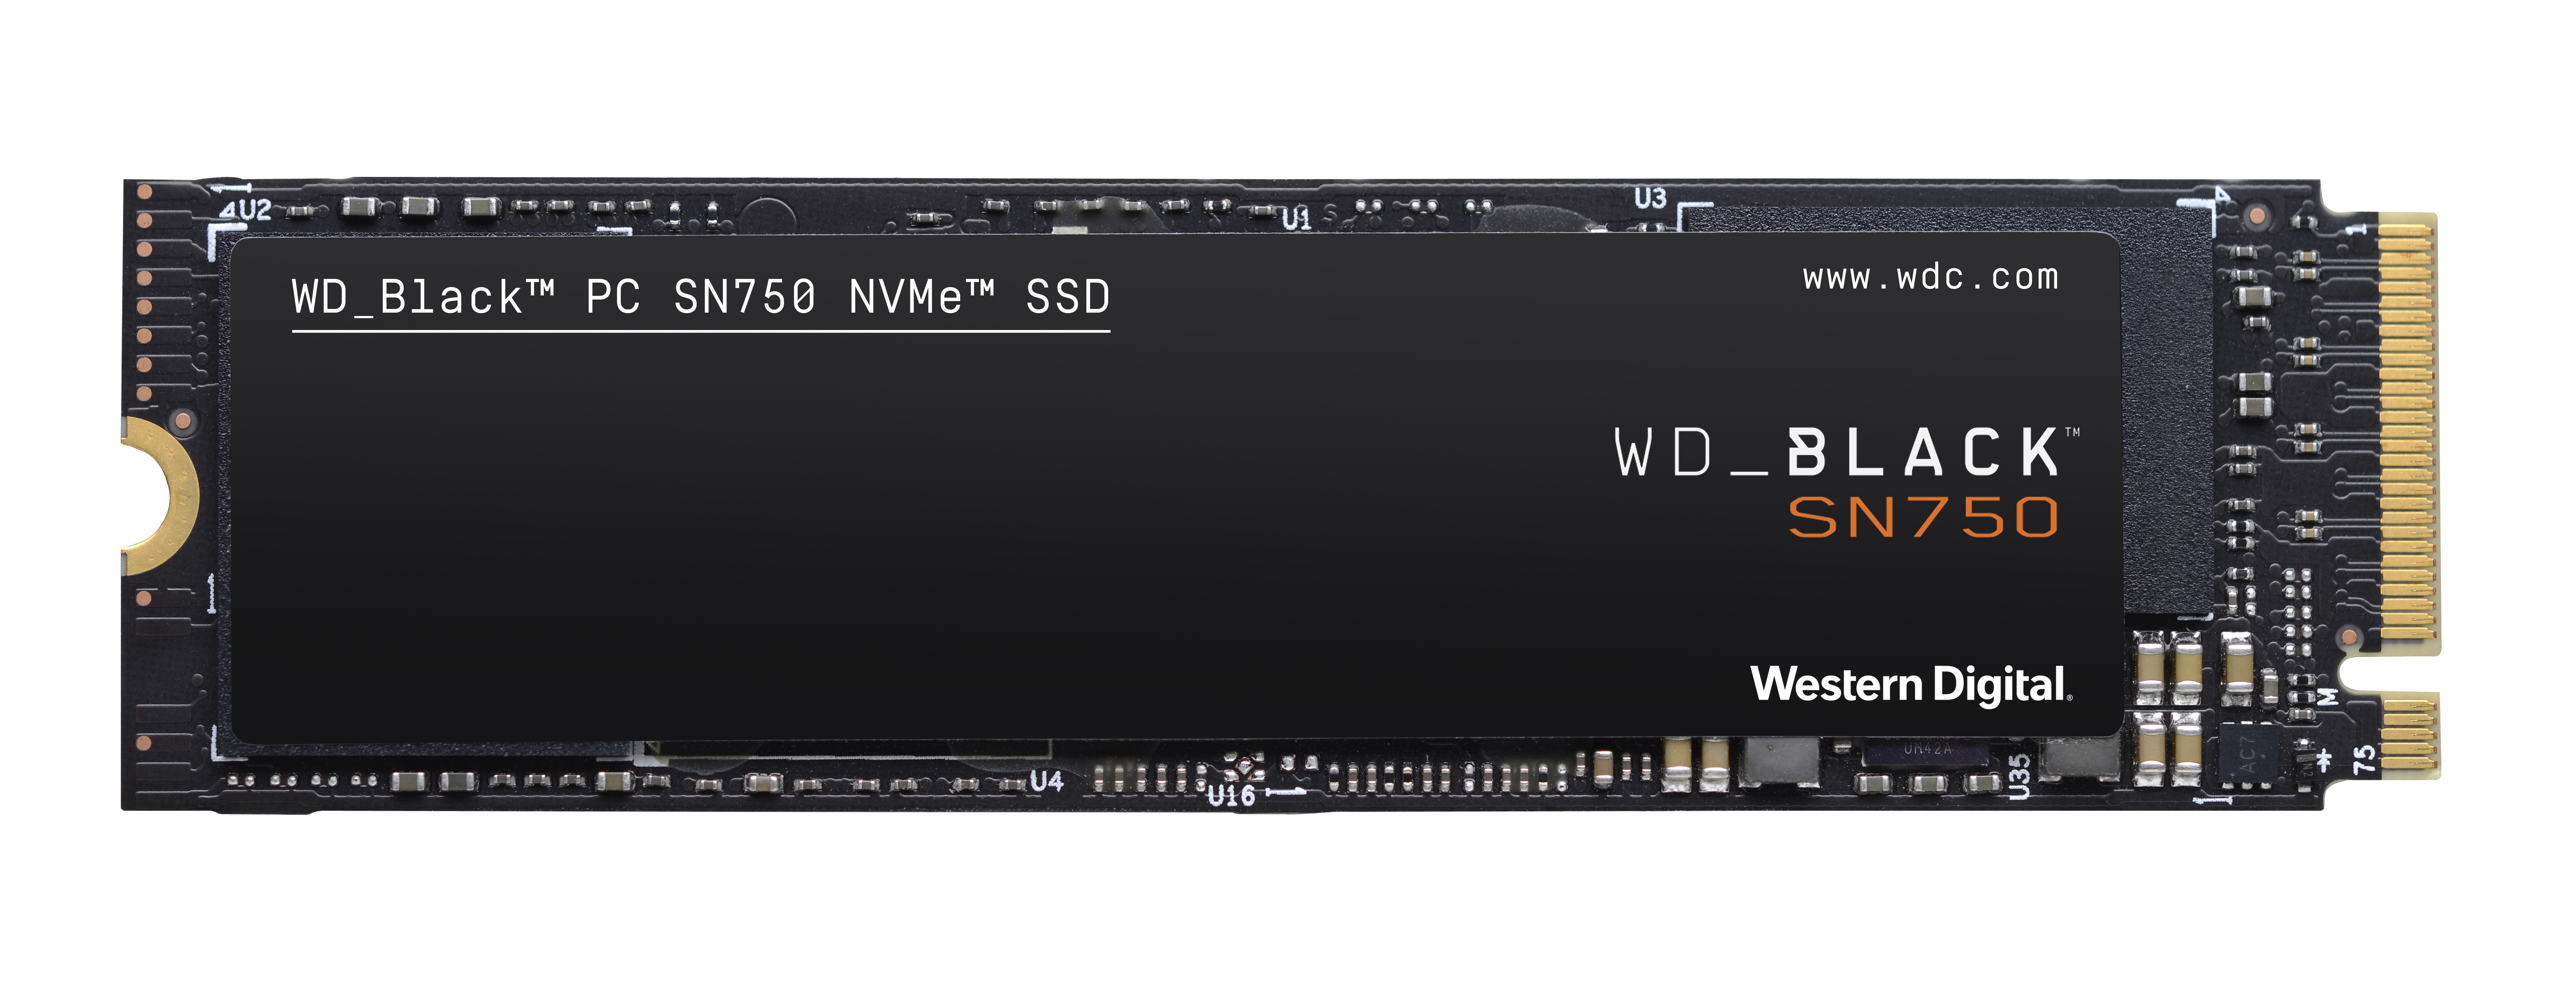 WD_BLACK SN750 NVMe™ Speicher, Interner 250 SSD, GB M.2, Speicher intern